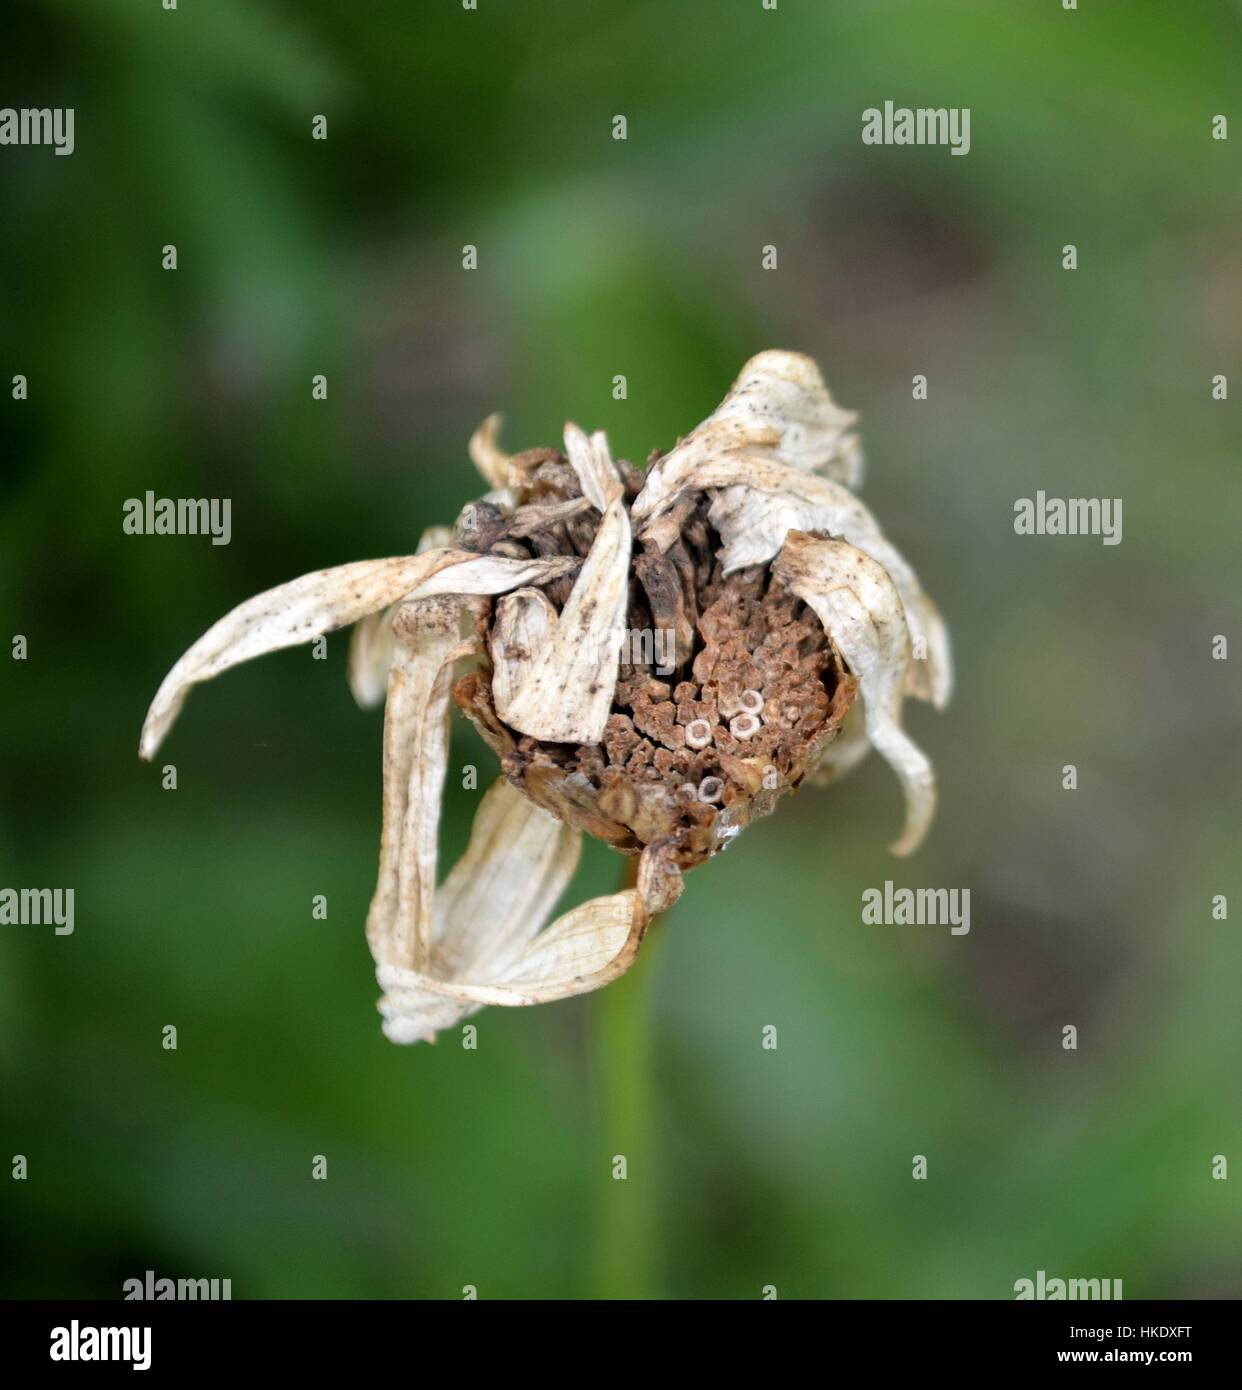 Dead daisy flower in detail Stock Photo